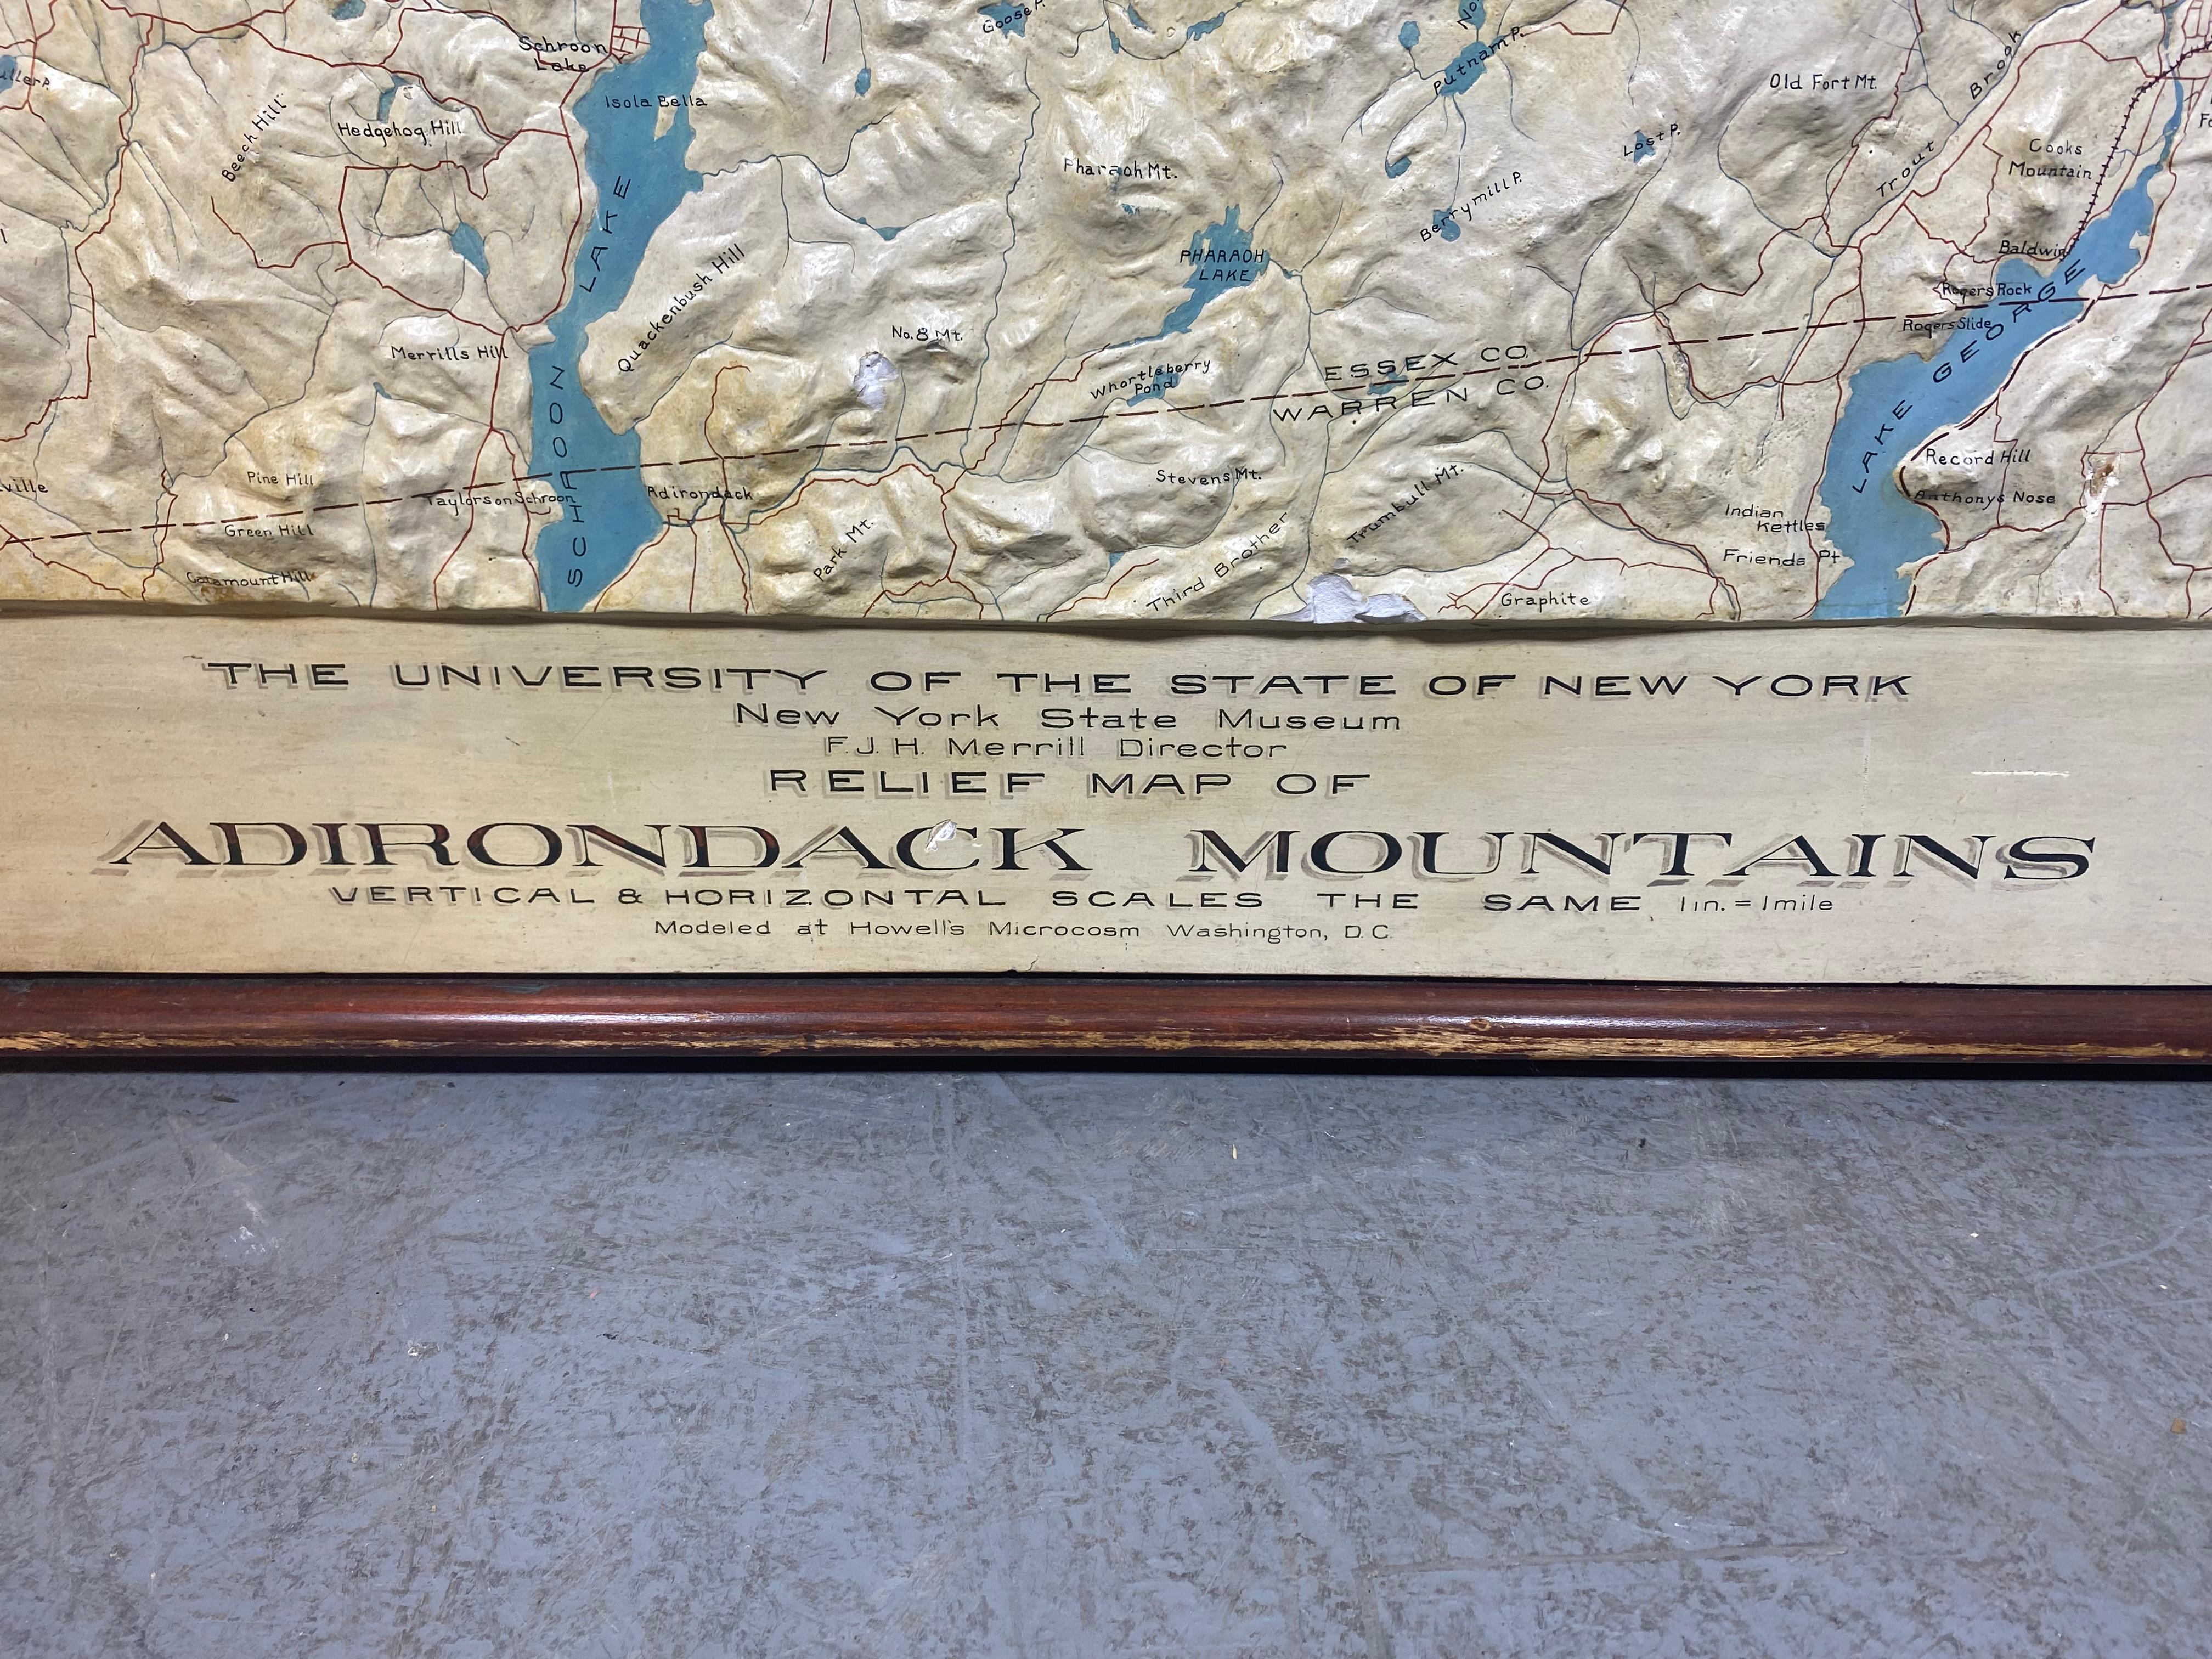 Rare et ancienne carte en relief en plâtre monumental des montagnes Adirondack par l'Université de l'État de New York,  New York State Museum..F J H Merrill directeur,,,,modelé par Howell's Microcosm,,,, Un exemple stupéfiant,, à mon avis fait au